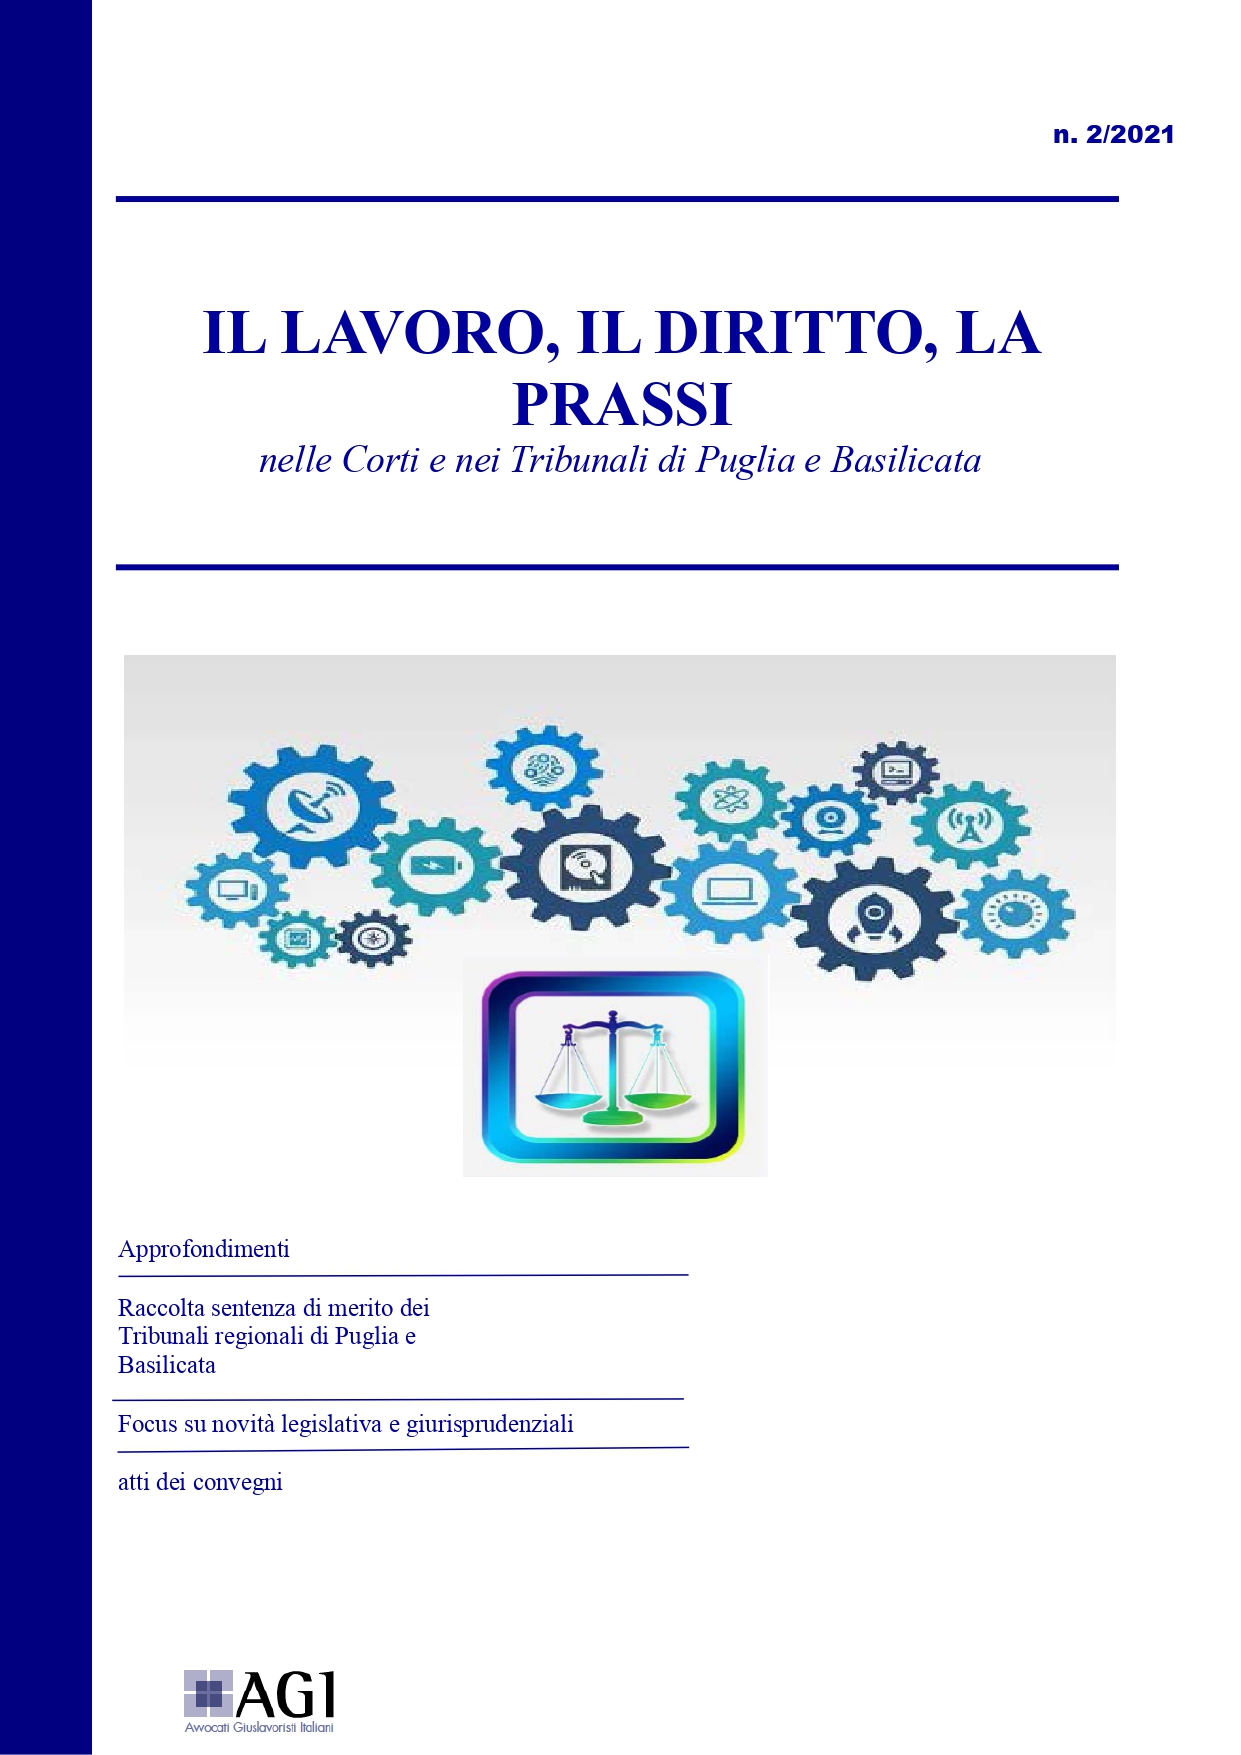 Il lavoro, il diritto, la prassi (nelle Corti e nei Tribunali di Puglia e Basilicata)